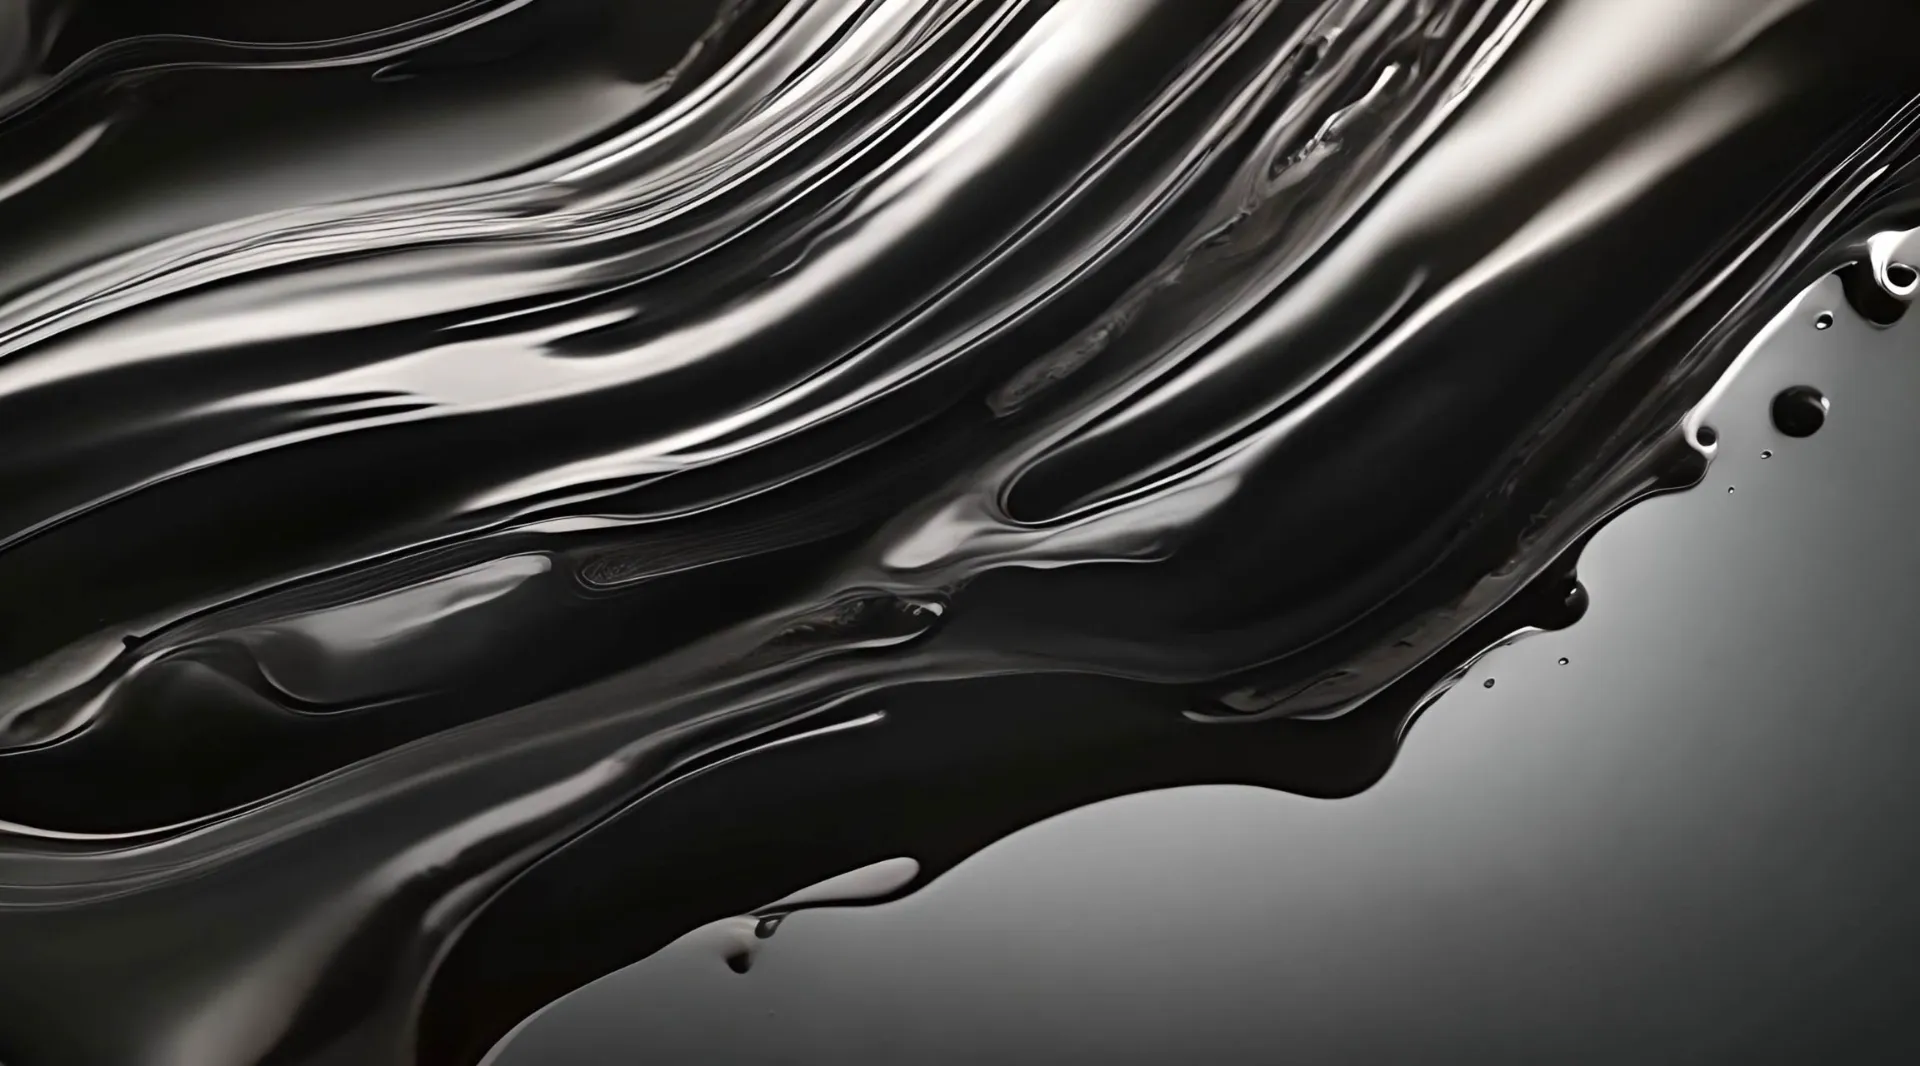 Elegant Liquid Flow Black and White Fluidity